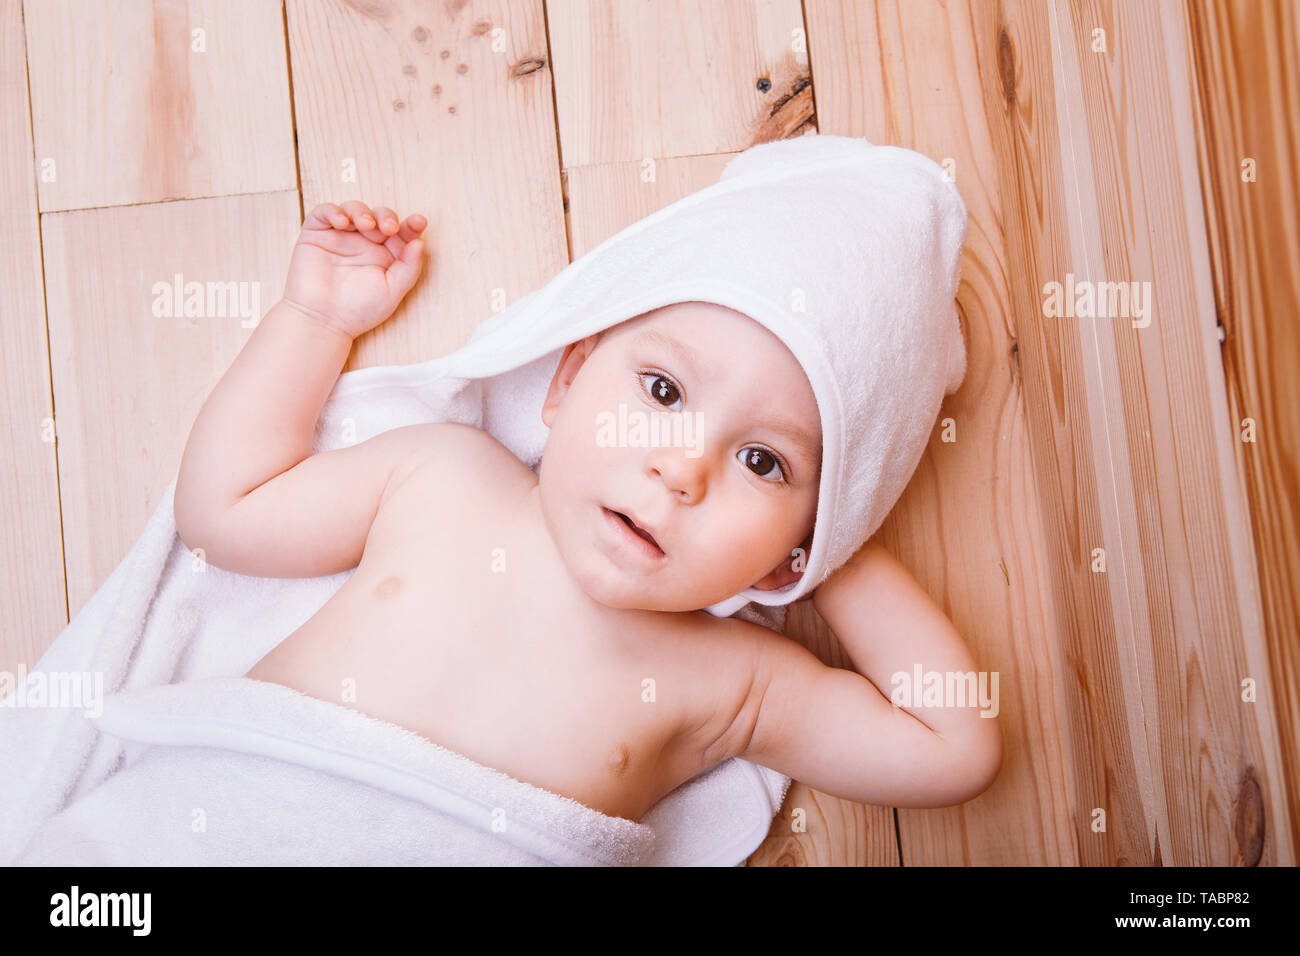 Baby Junge mit braunen Augen ist fünf Monate alt in einem weißen Handtuch mit Ohren auf hölzernen Hintergrund braun gehüllt. Stockfoto